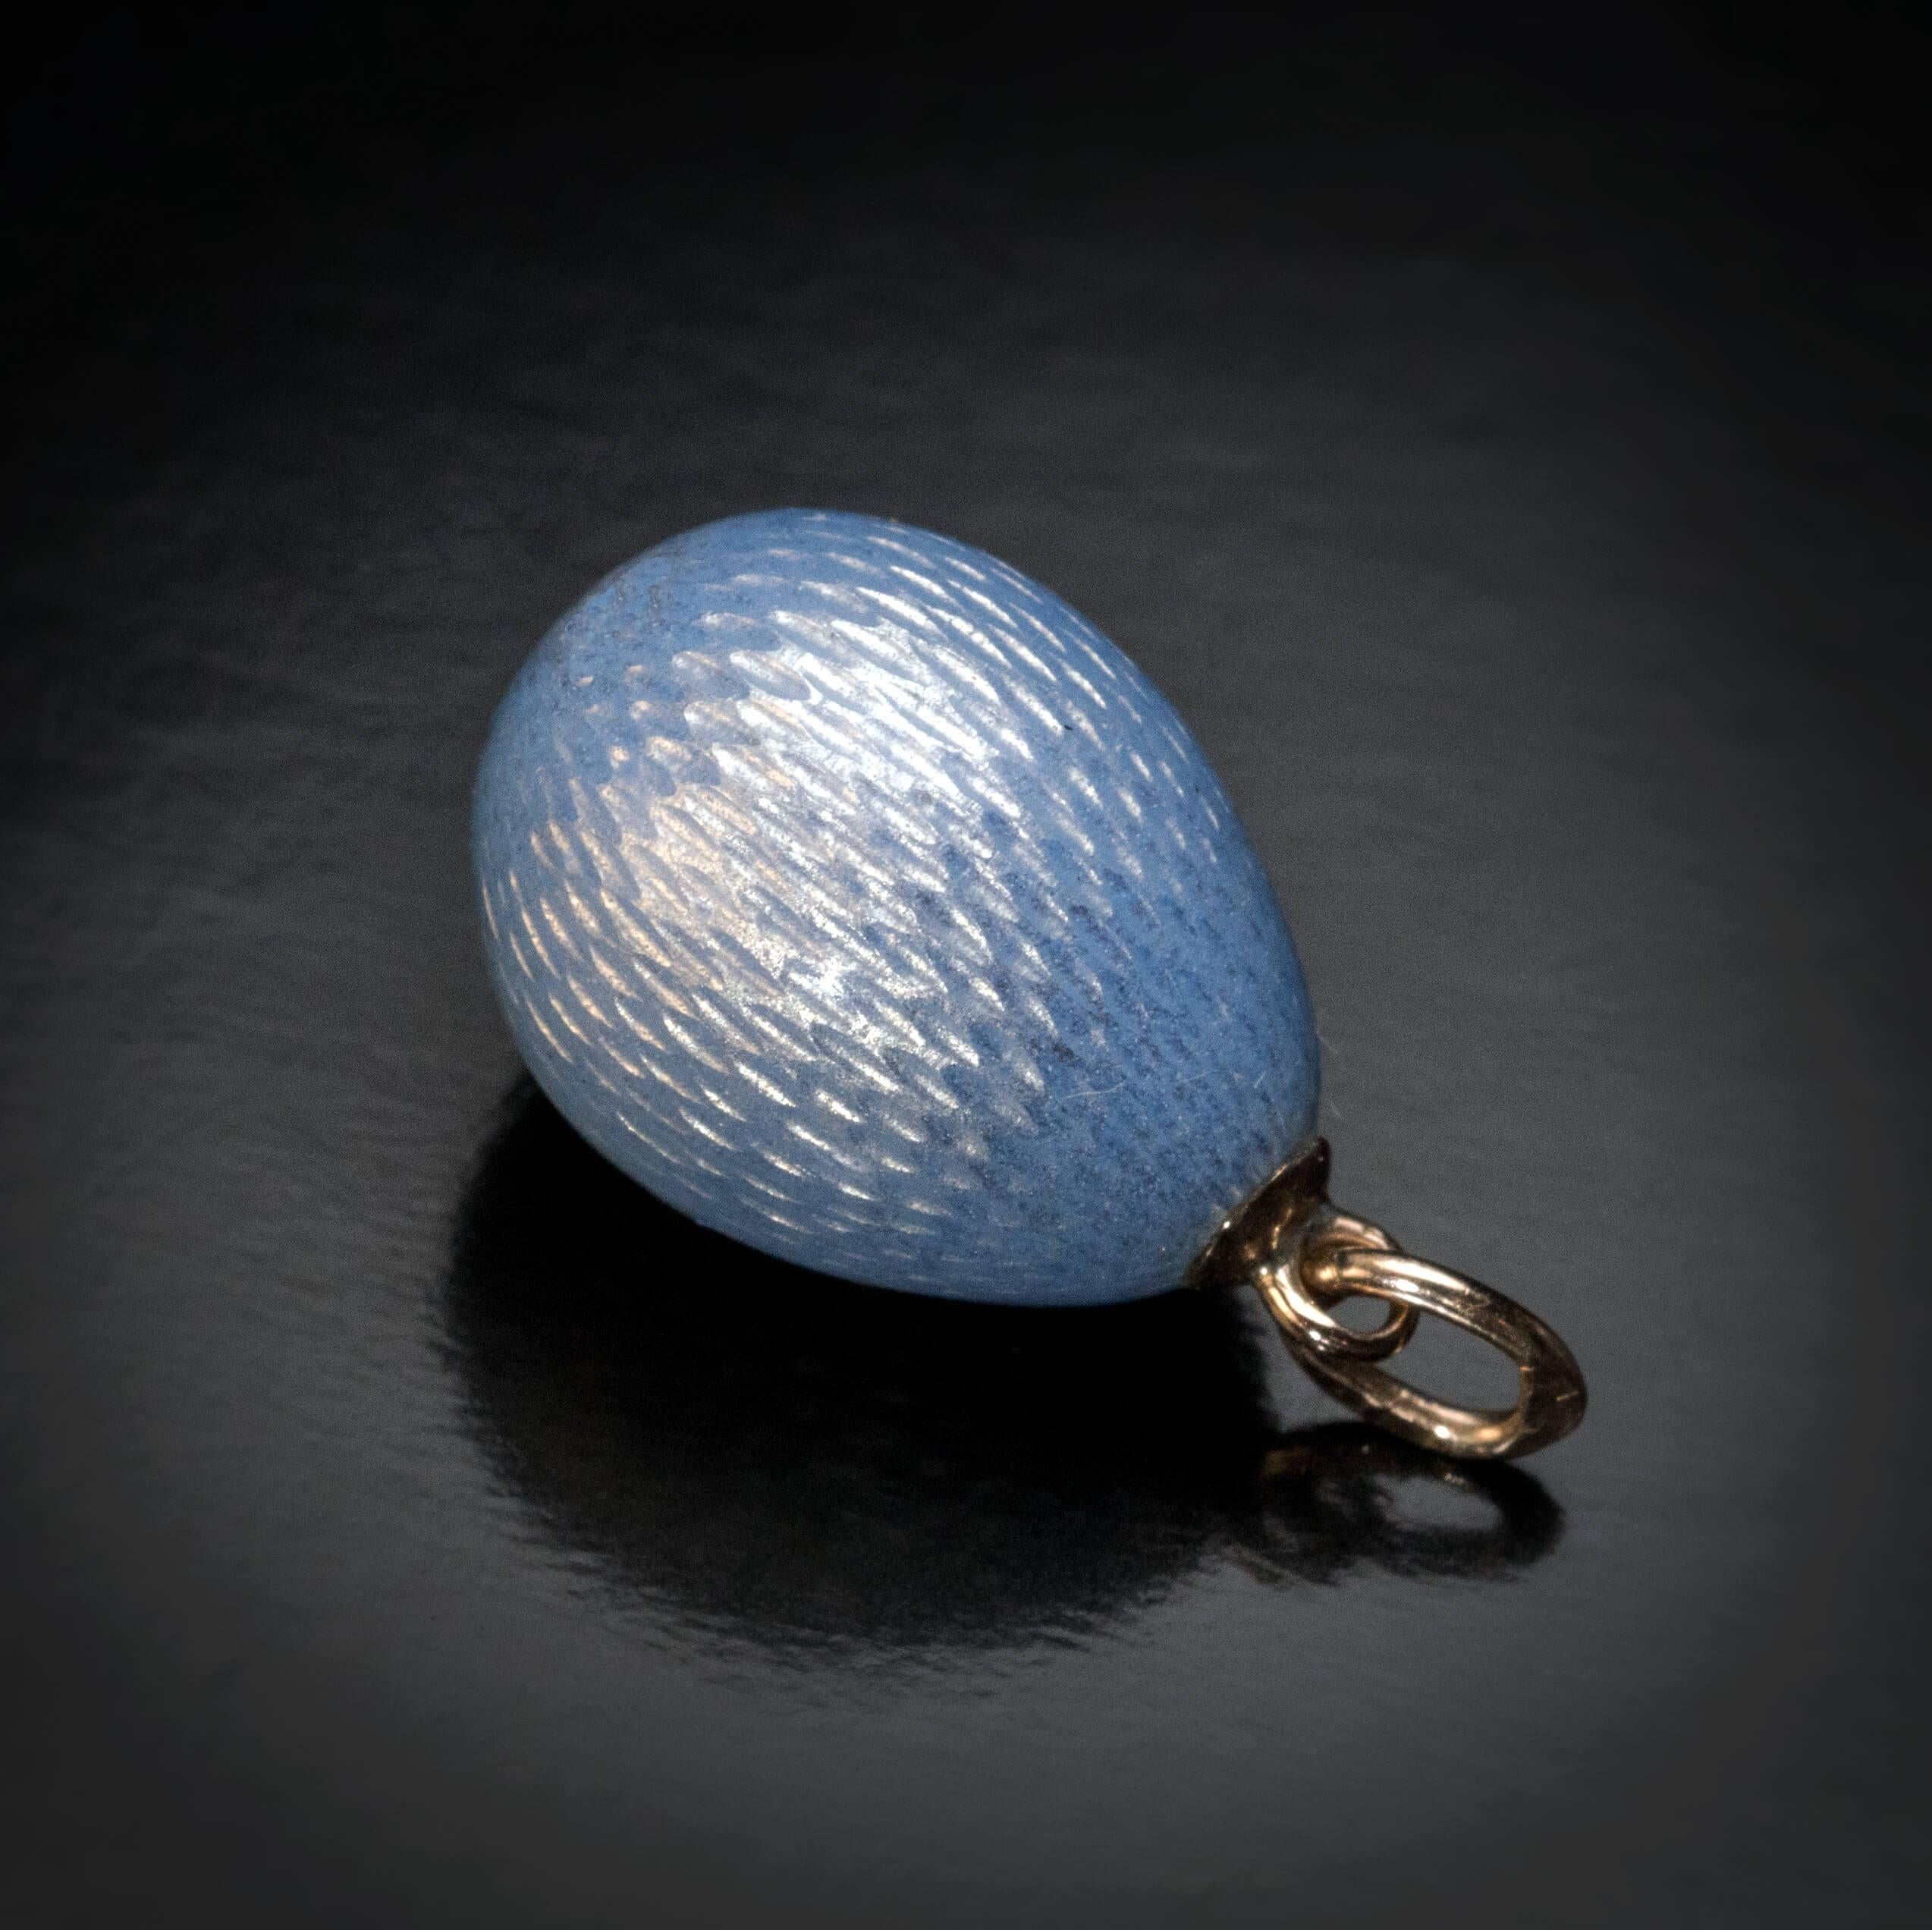 Women's FABERGE Antique Blue Guilloche Enamel Miniature Egg Pendant 1900s For Sale